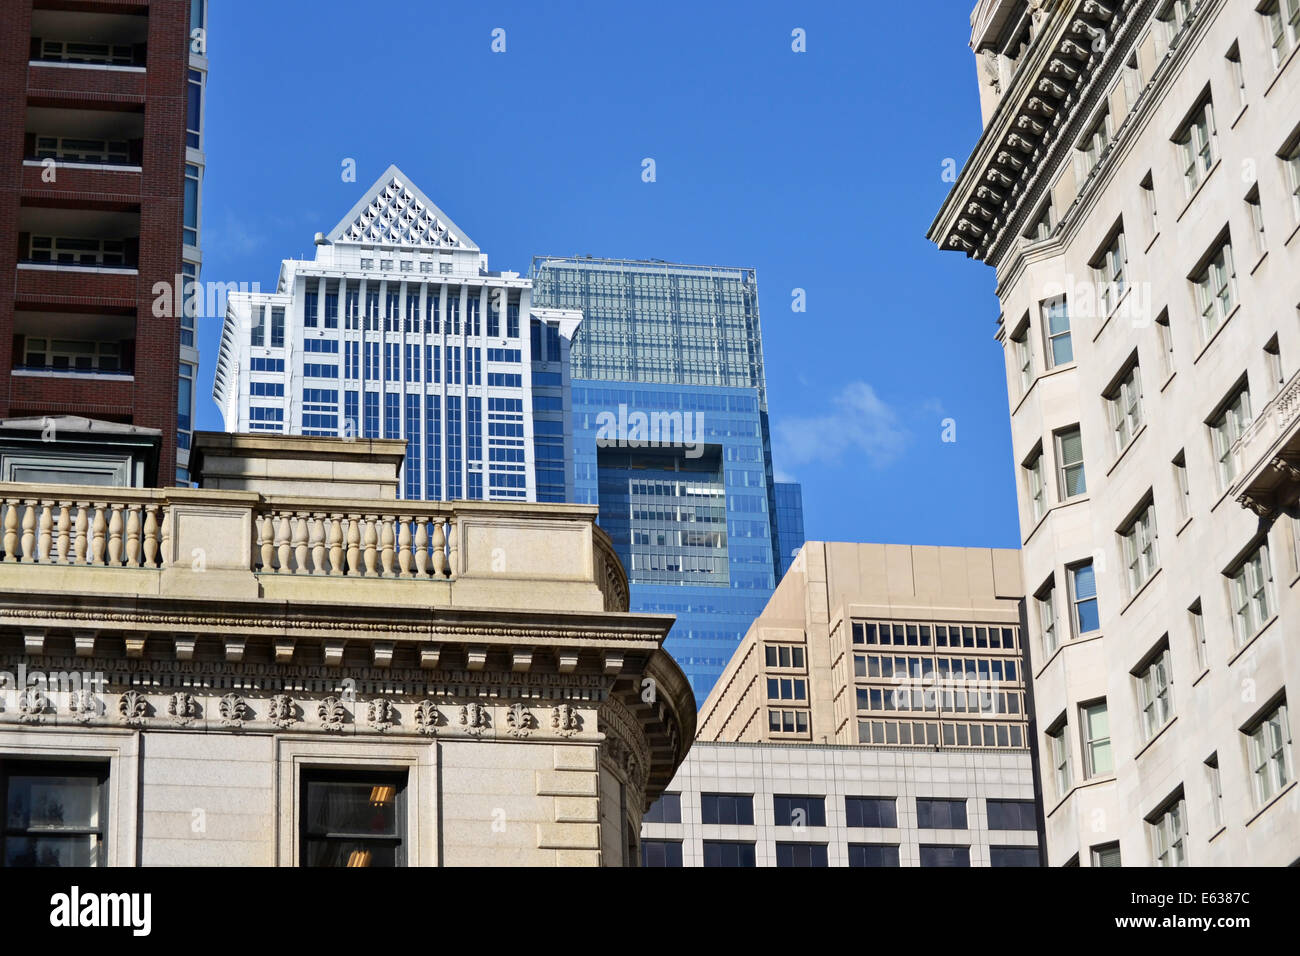 Several Philadelphia buildings against a pretty blue sky Stock Photo